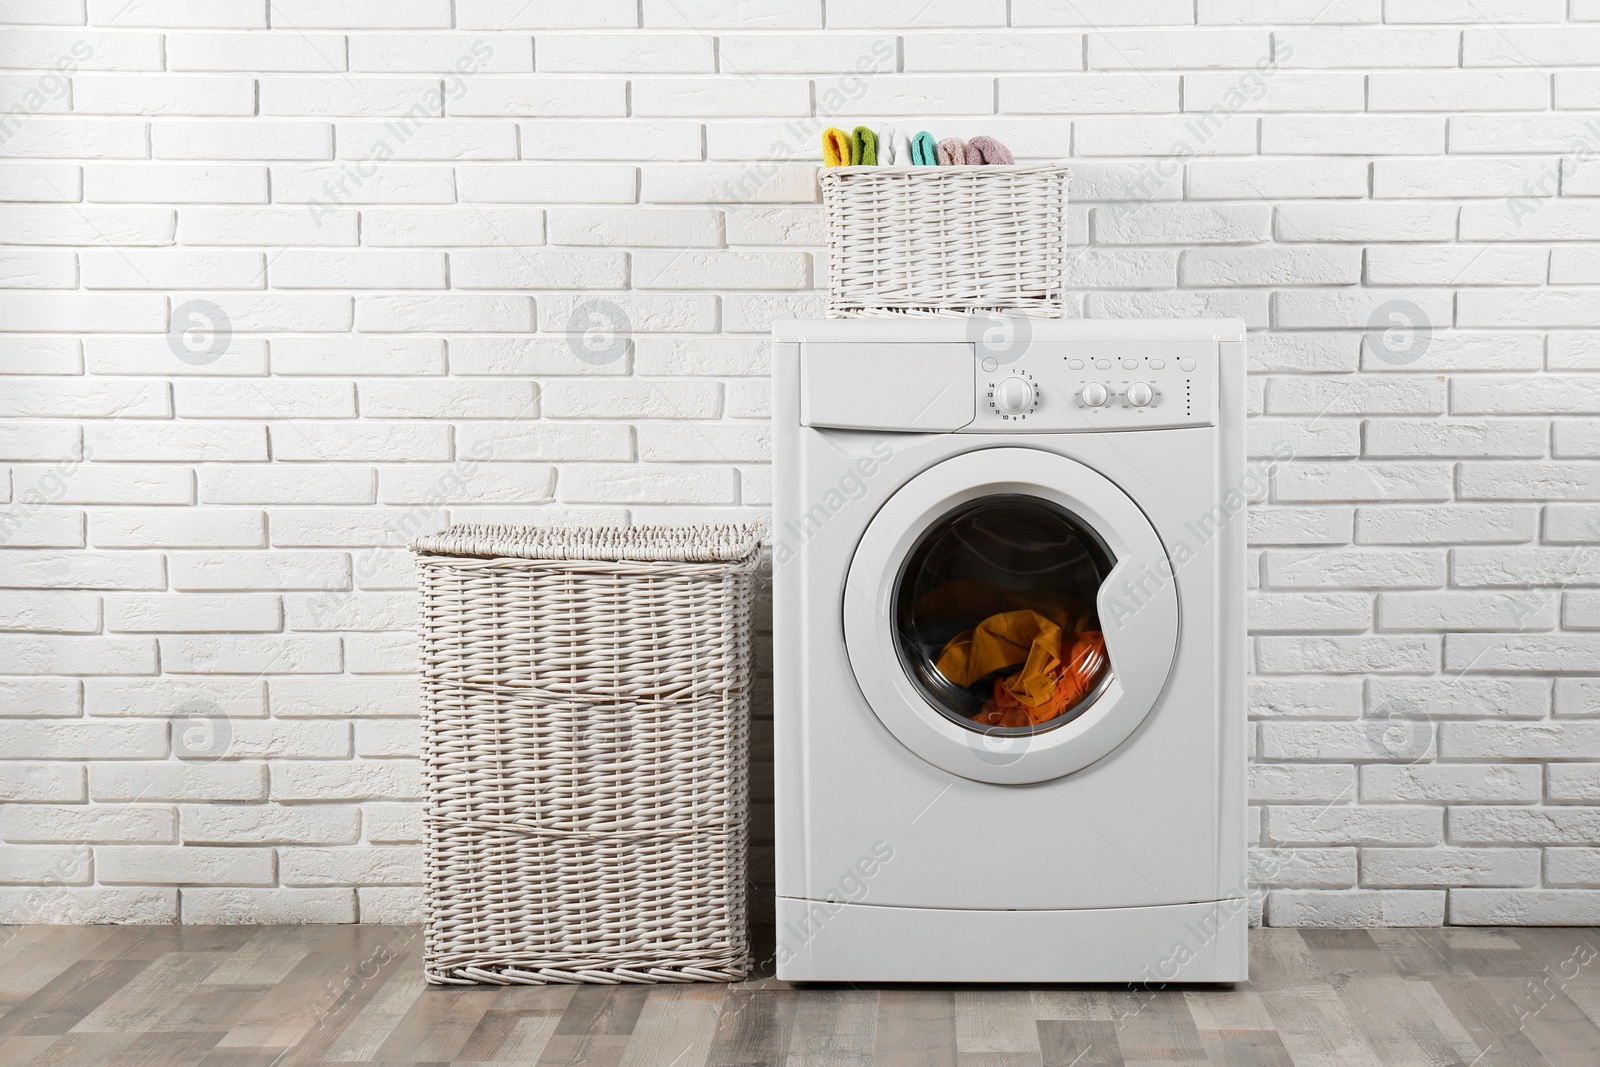 Photo of Modern washing machine and laundry baskets near white brick wall